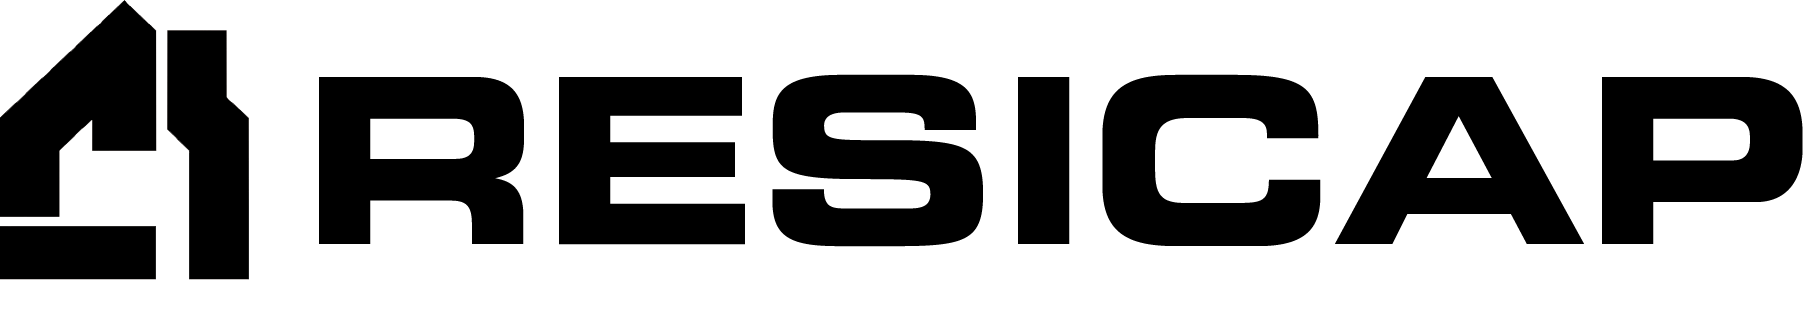 Resicap logo